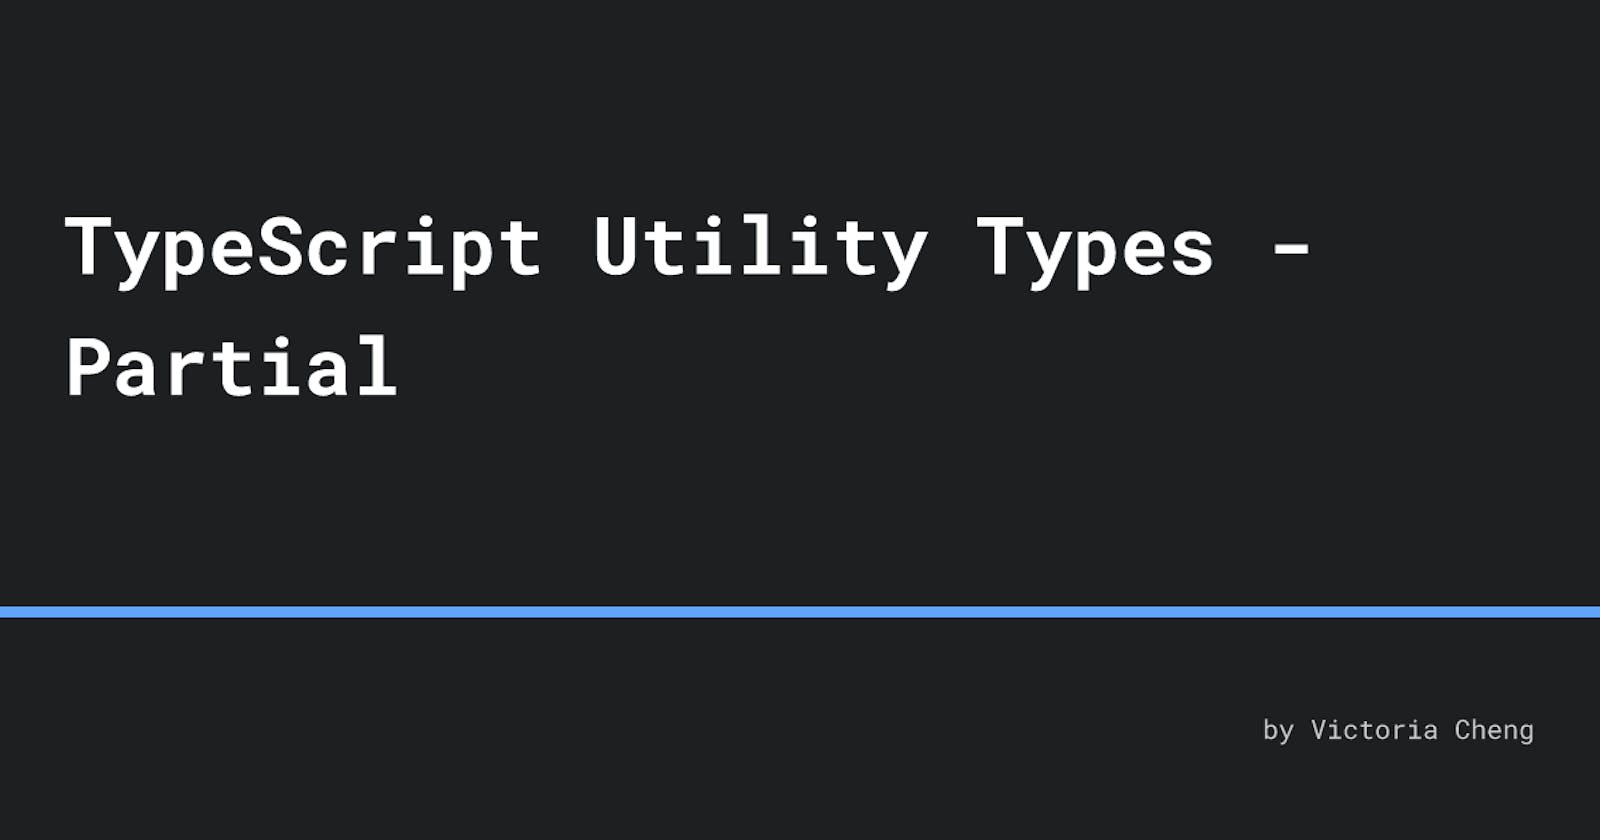 TypeScript Utility Types - Partial